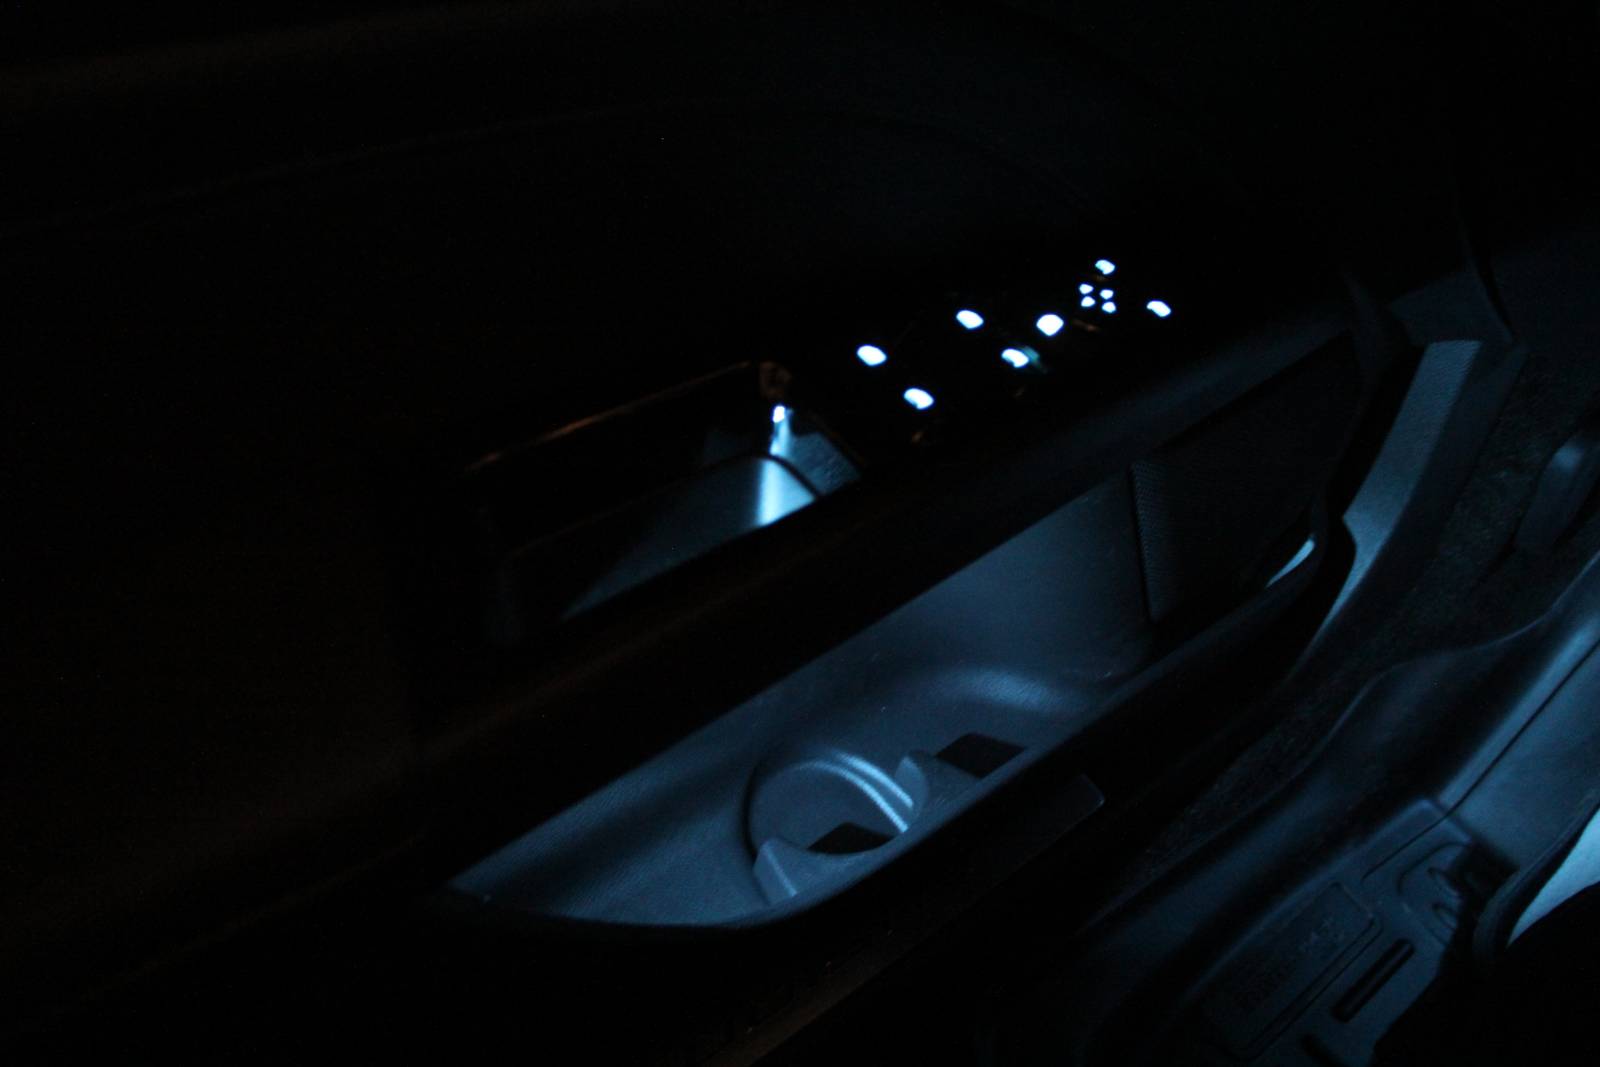 Driver's door ambient lights